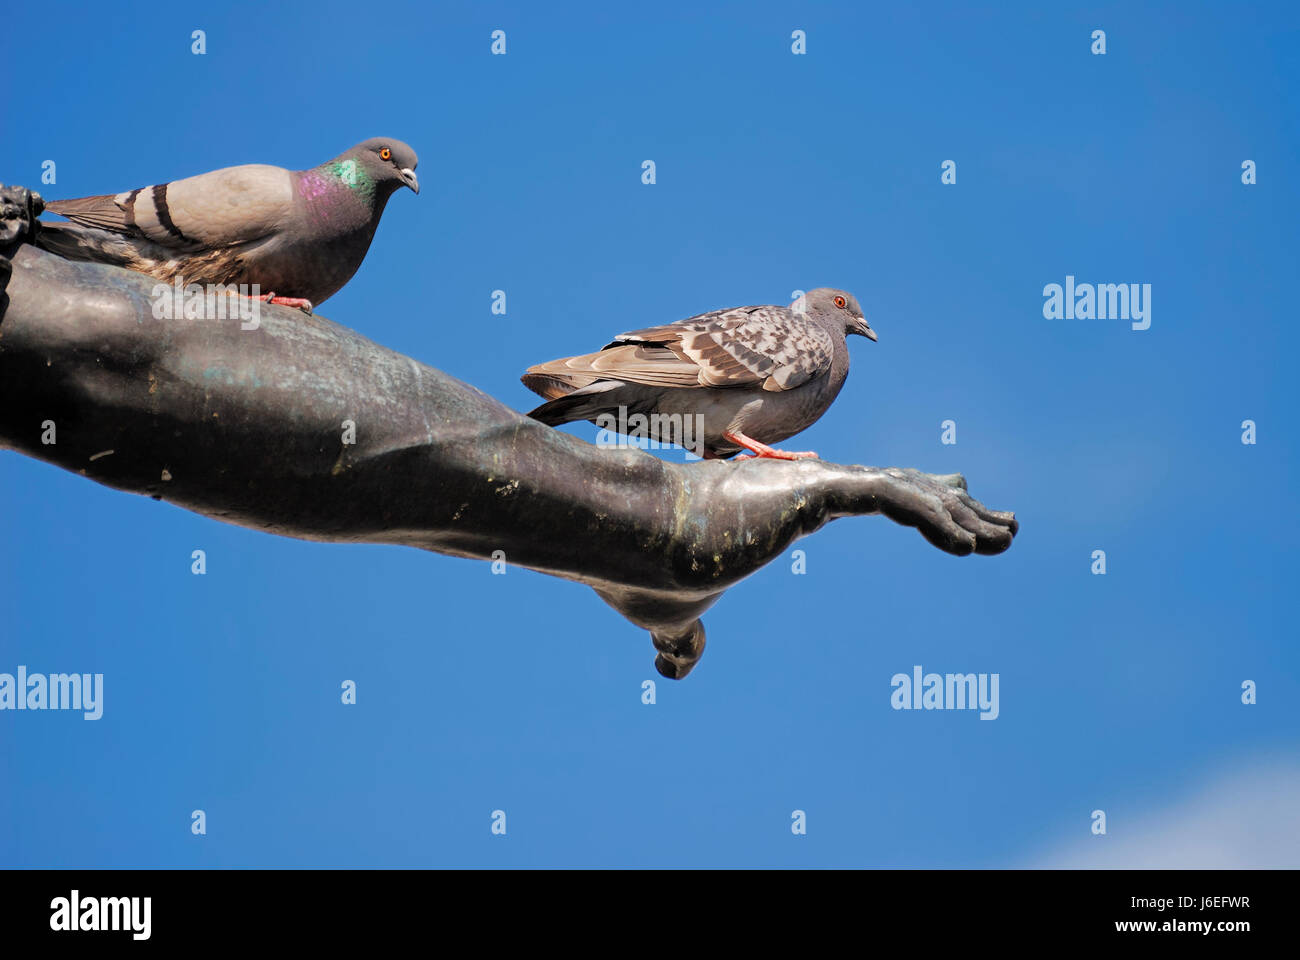 art bird sculpture pigeon arts firmament sky blue art animal bird animals Stock Photo